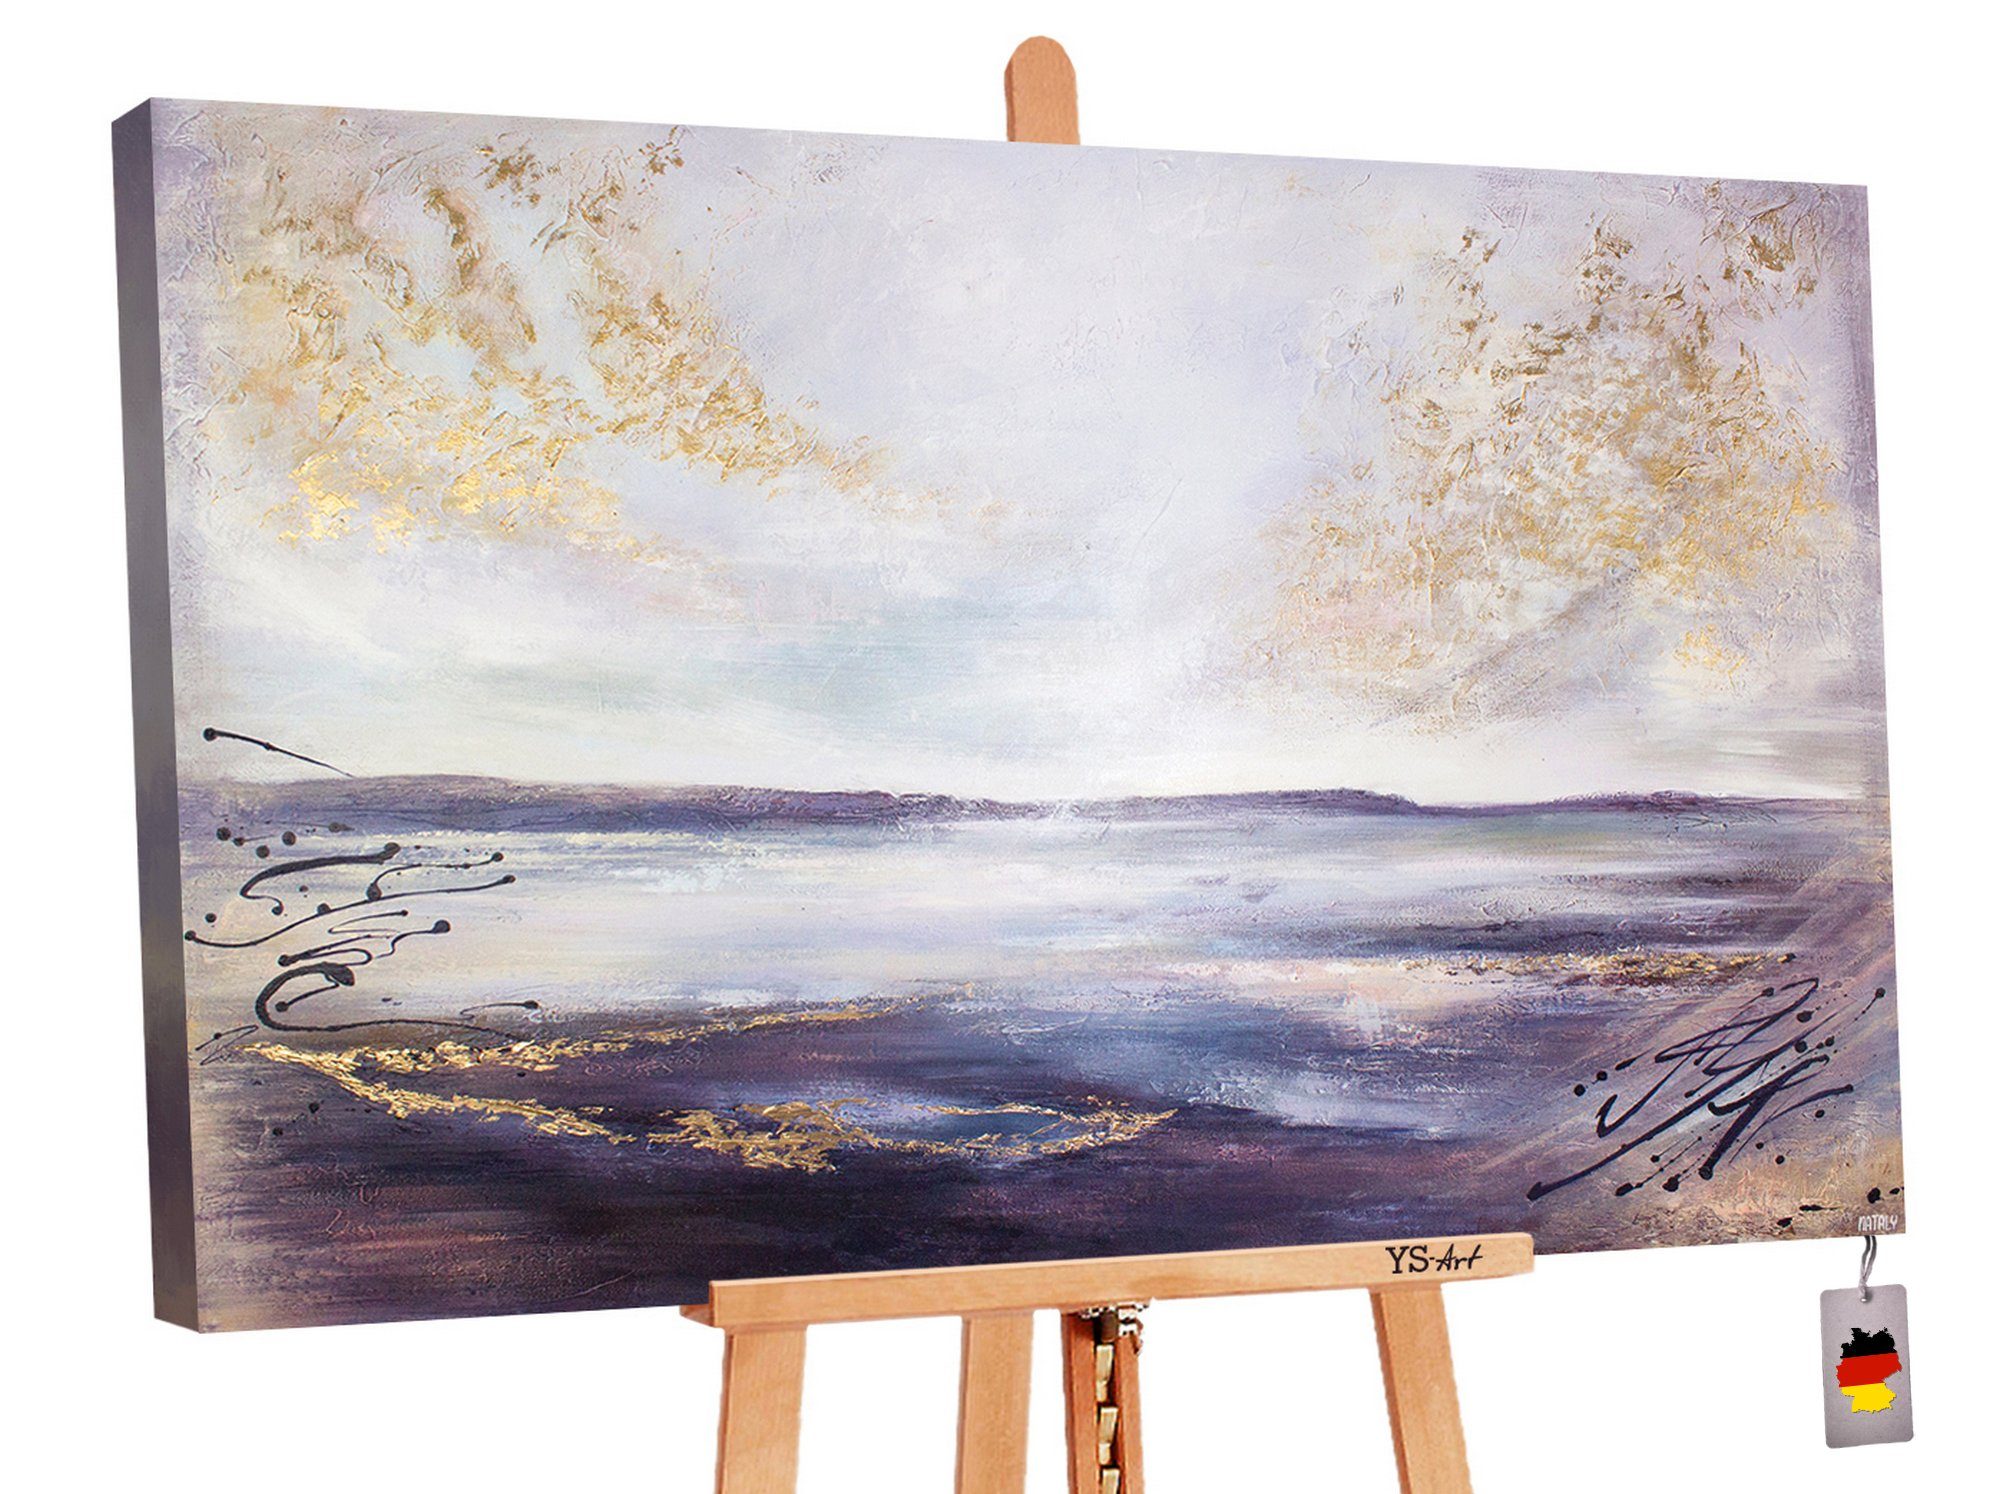 YS-Art Handgemalt Meer Bild Leinwand Meer-Weitblick, Gemälde Meereslandschaft Strand Landschaft, Wasser